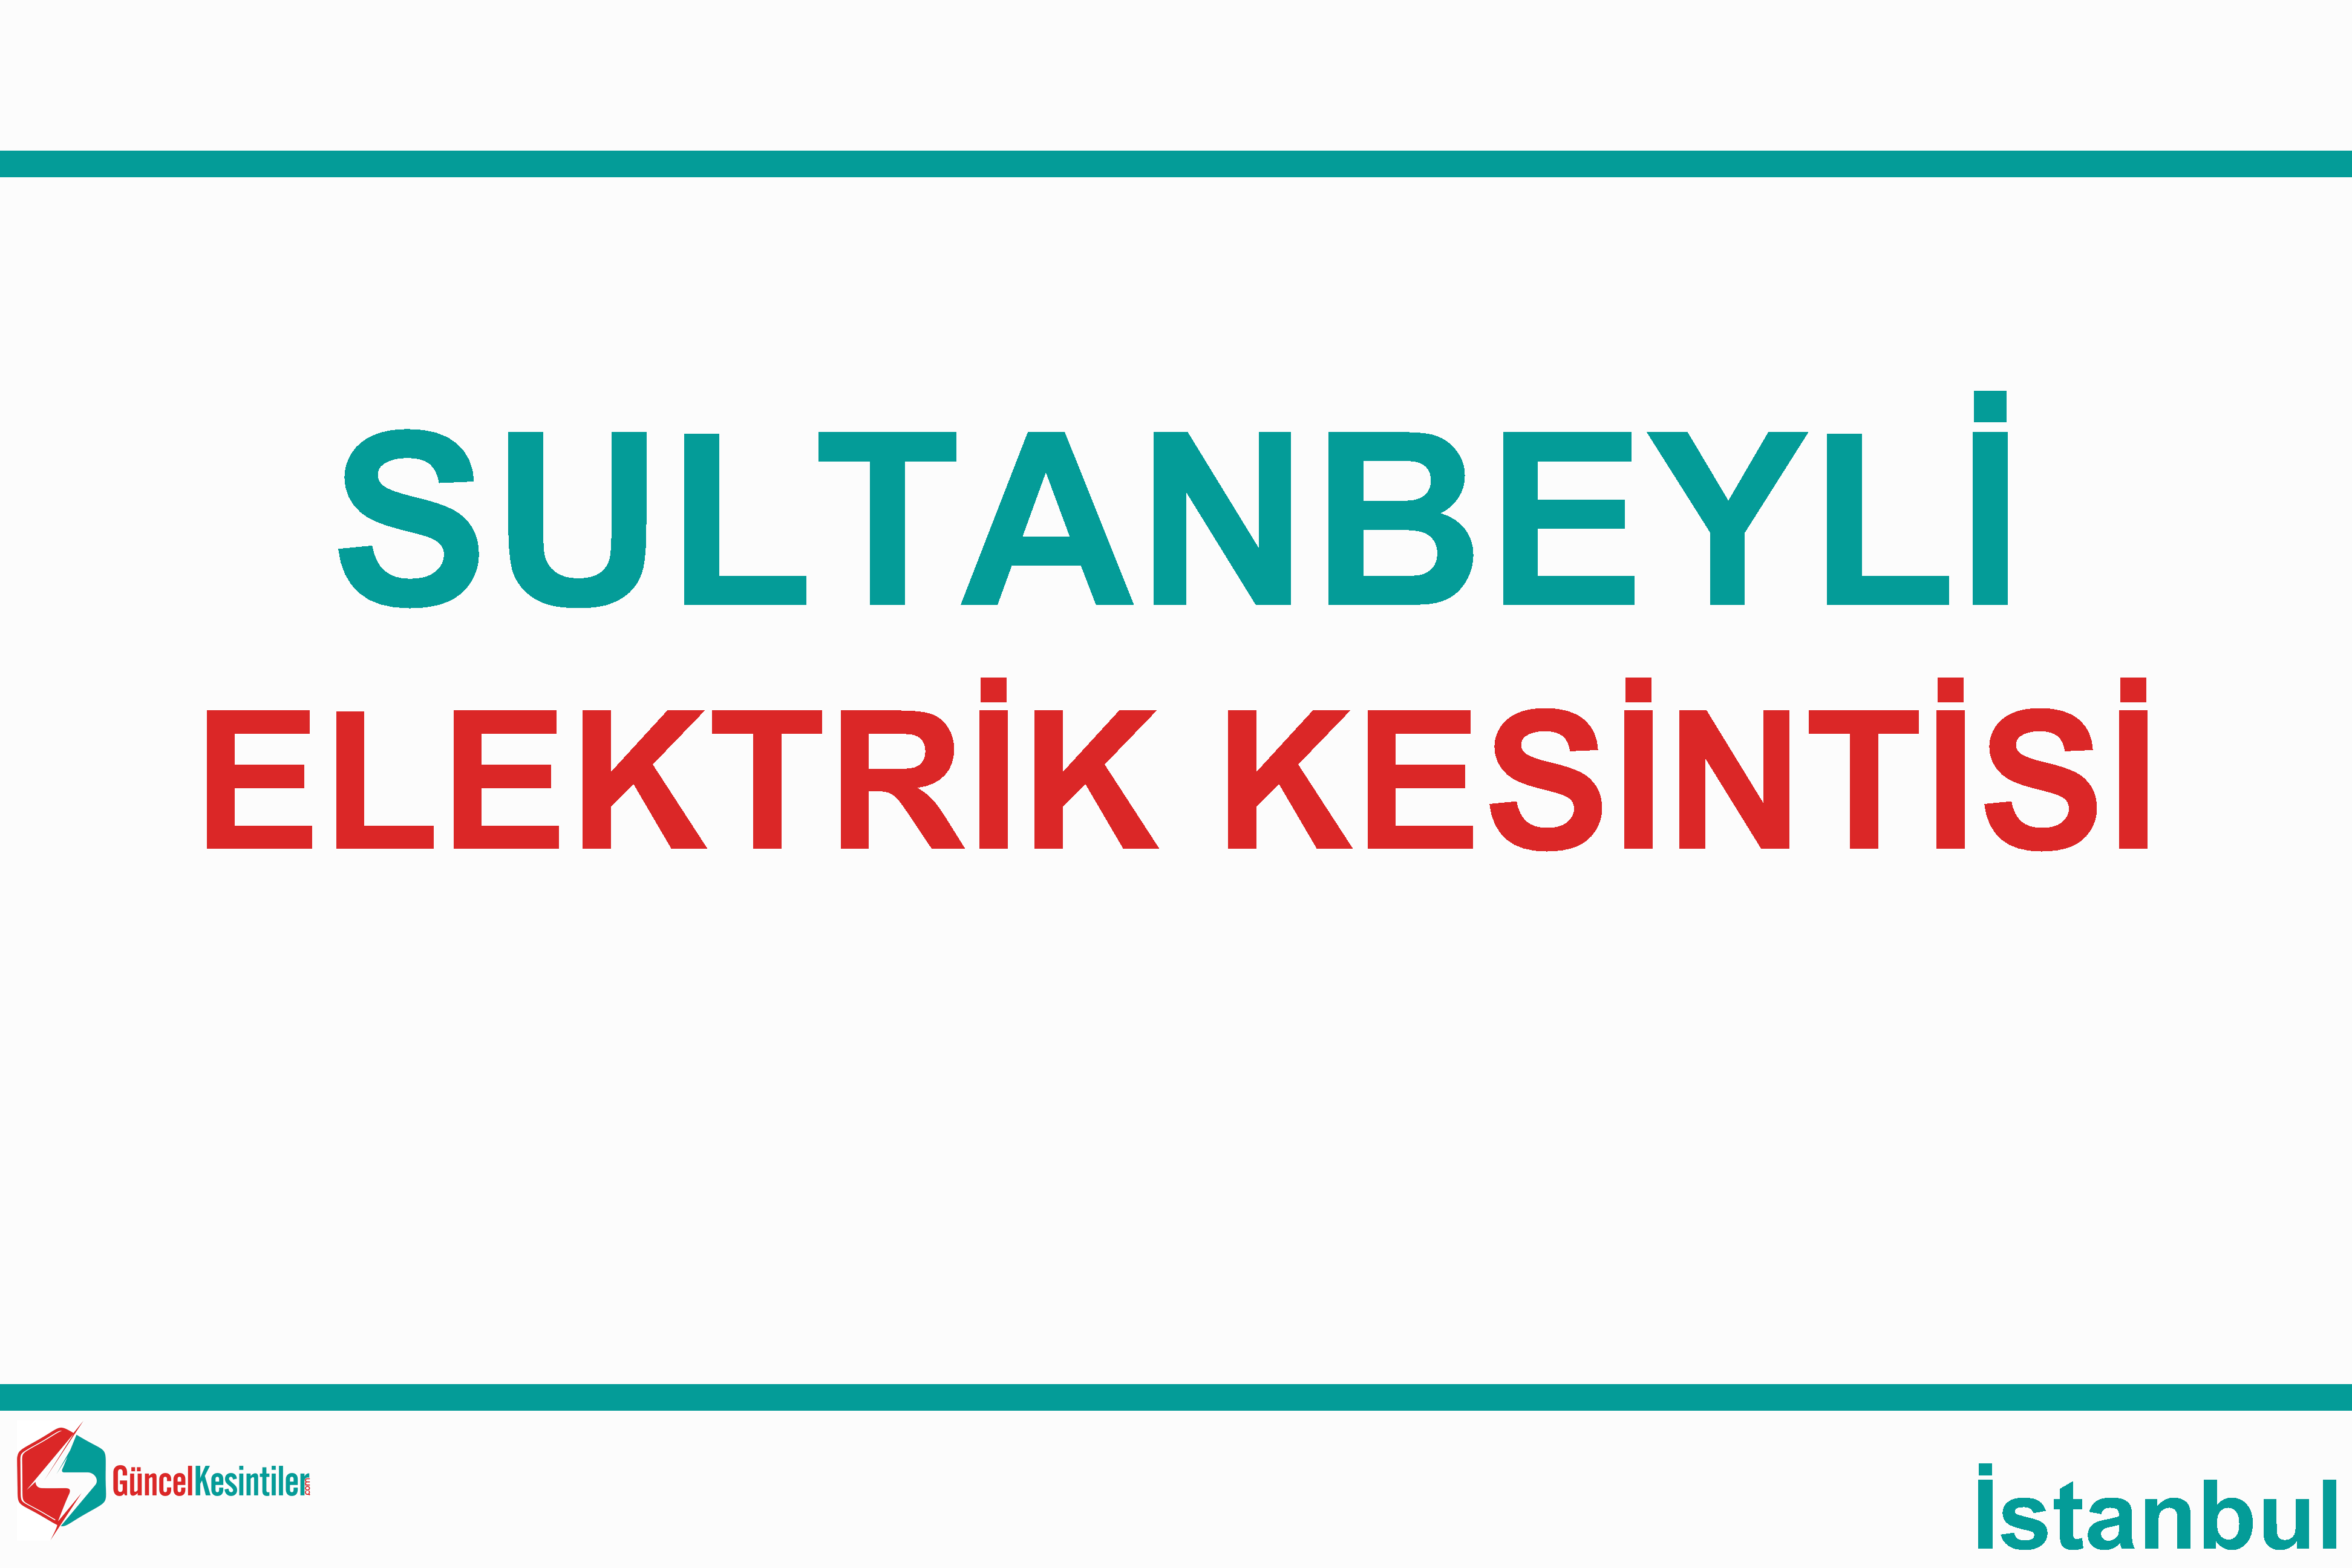 sultanbeyli elektrik kesintisi listesi istanbul ayedas guncel kesinti bilgileri elektrik su